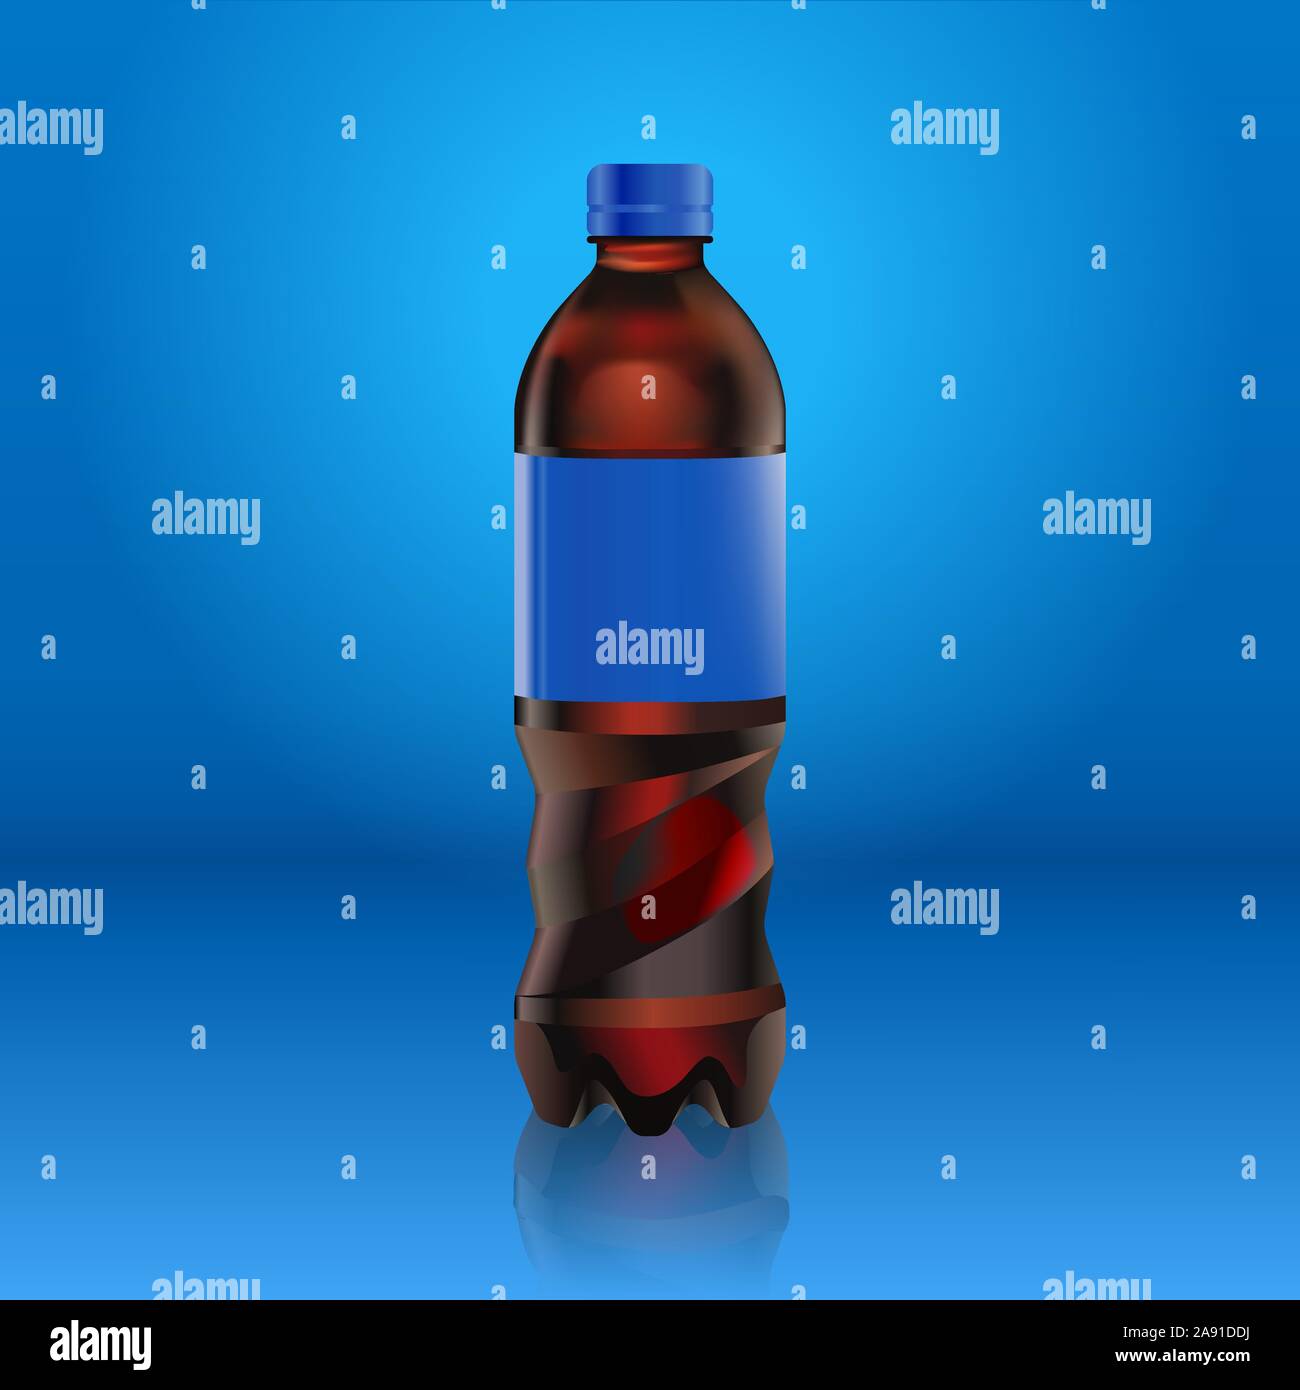 Realistico Pepsi Cola bottiglia mock up con etichetta blu isolato su sfondo blu riflessa dal pavimento, illustrazione vettoriale. Adatto per il vostro grande Illustrazione Vettoriale